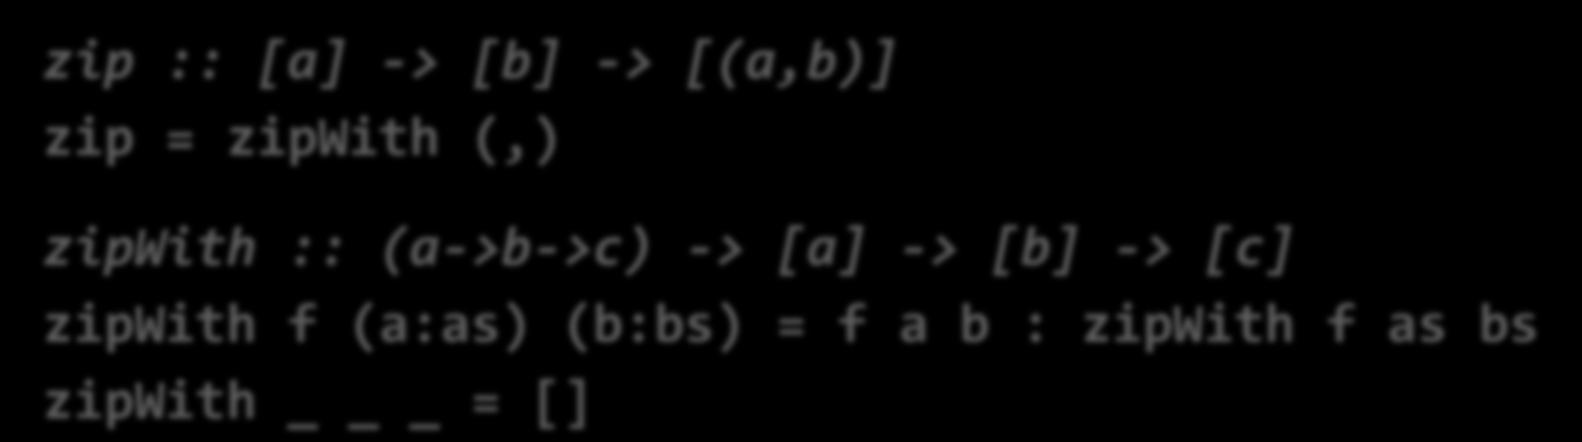 Zip y ZipWith Zip combina dos listas (con elementos de tipos a y b) en una lista de tuplas (si una lista es más larga, se ignoran los elementos sobrantes): zip :: [a] -> [b] -> [(a,b)] zip = zipwith